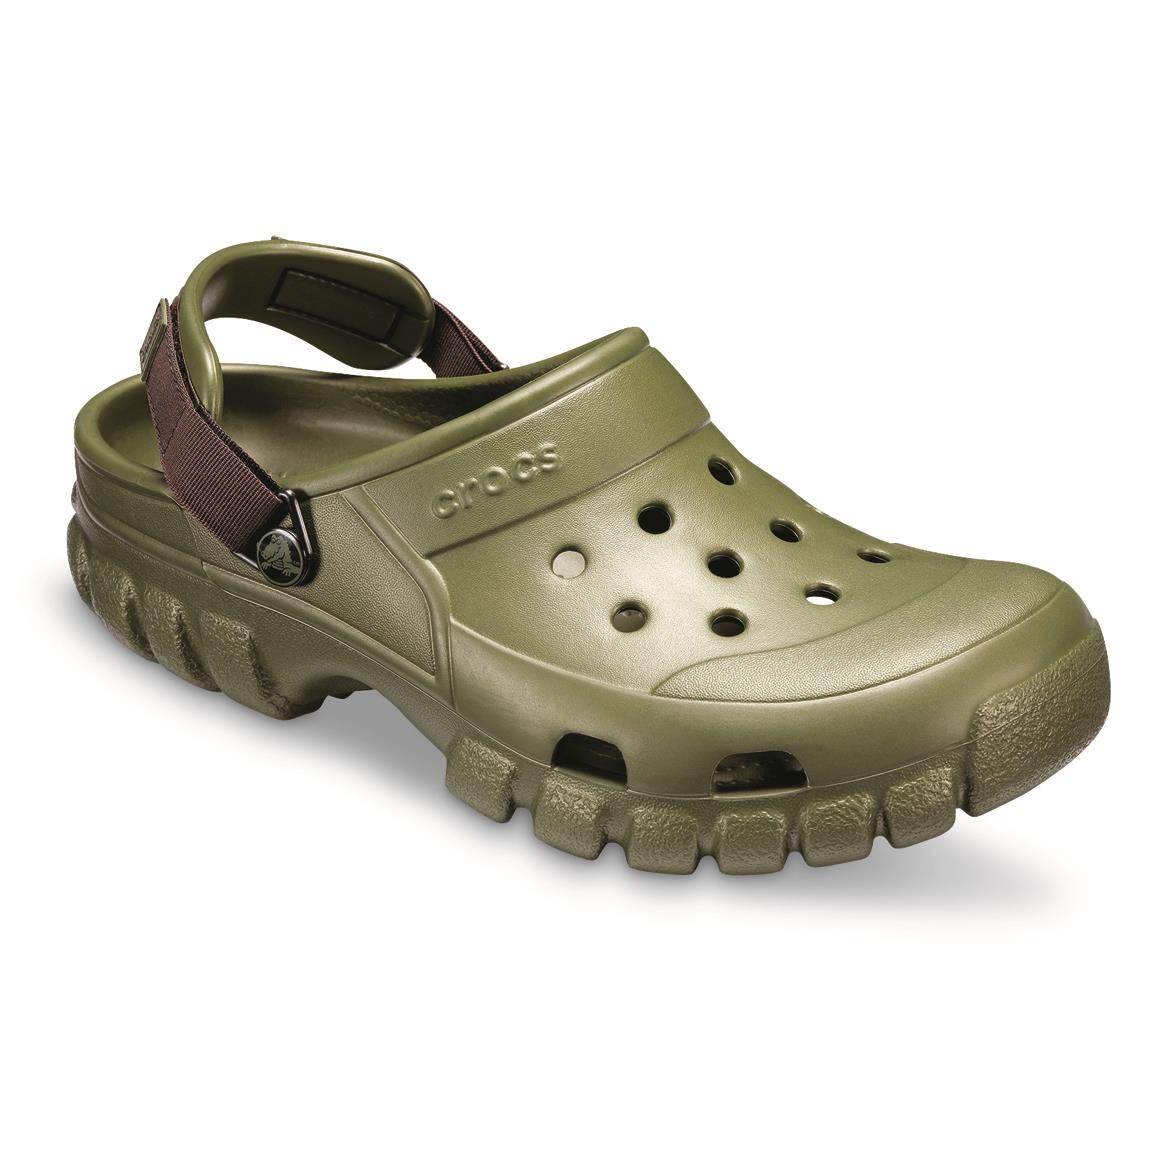  Crocs  Men s Offroad Sport Clogs 654886 Casual Shoes at 